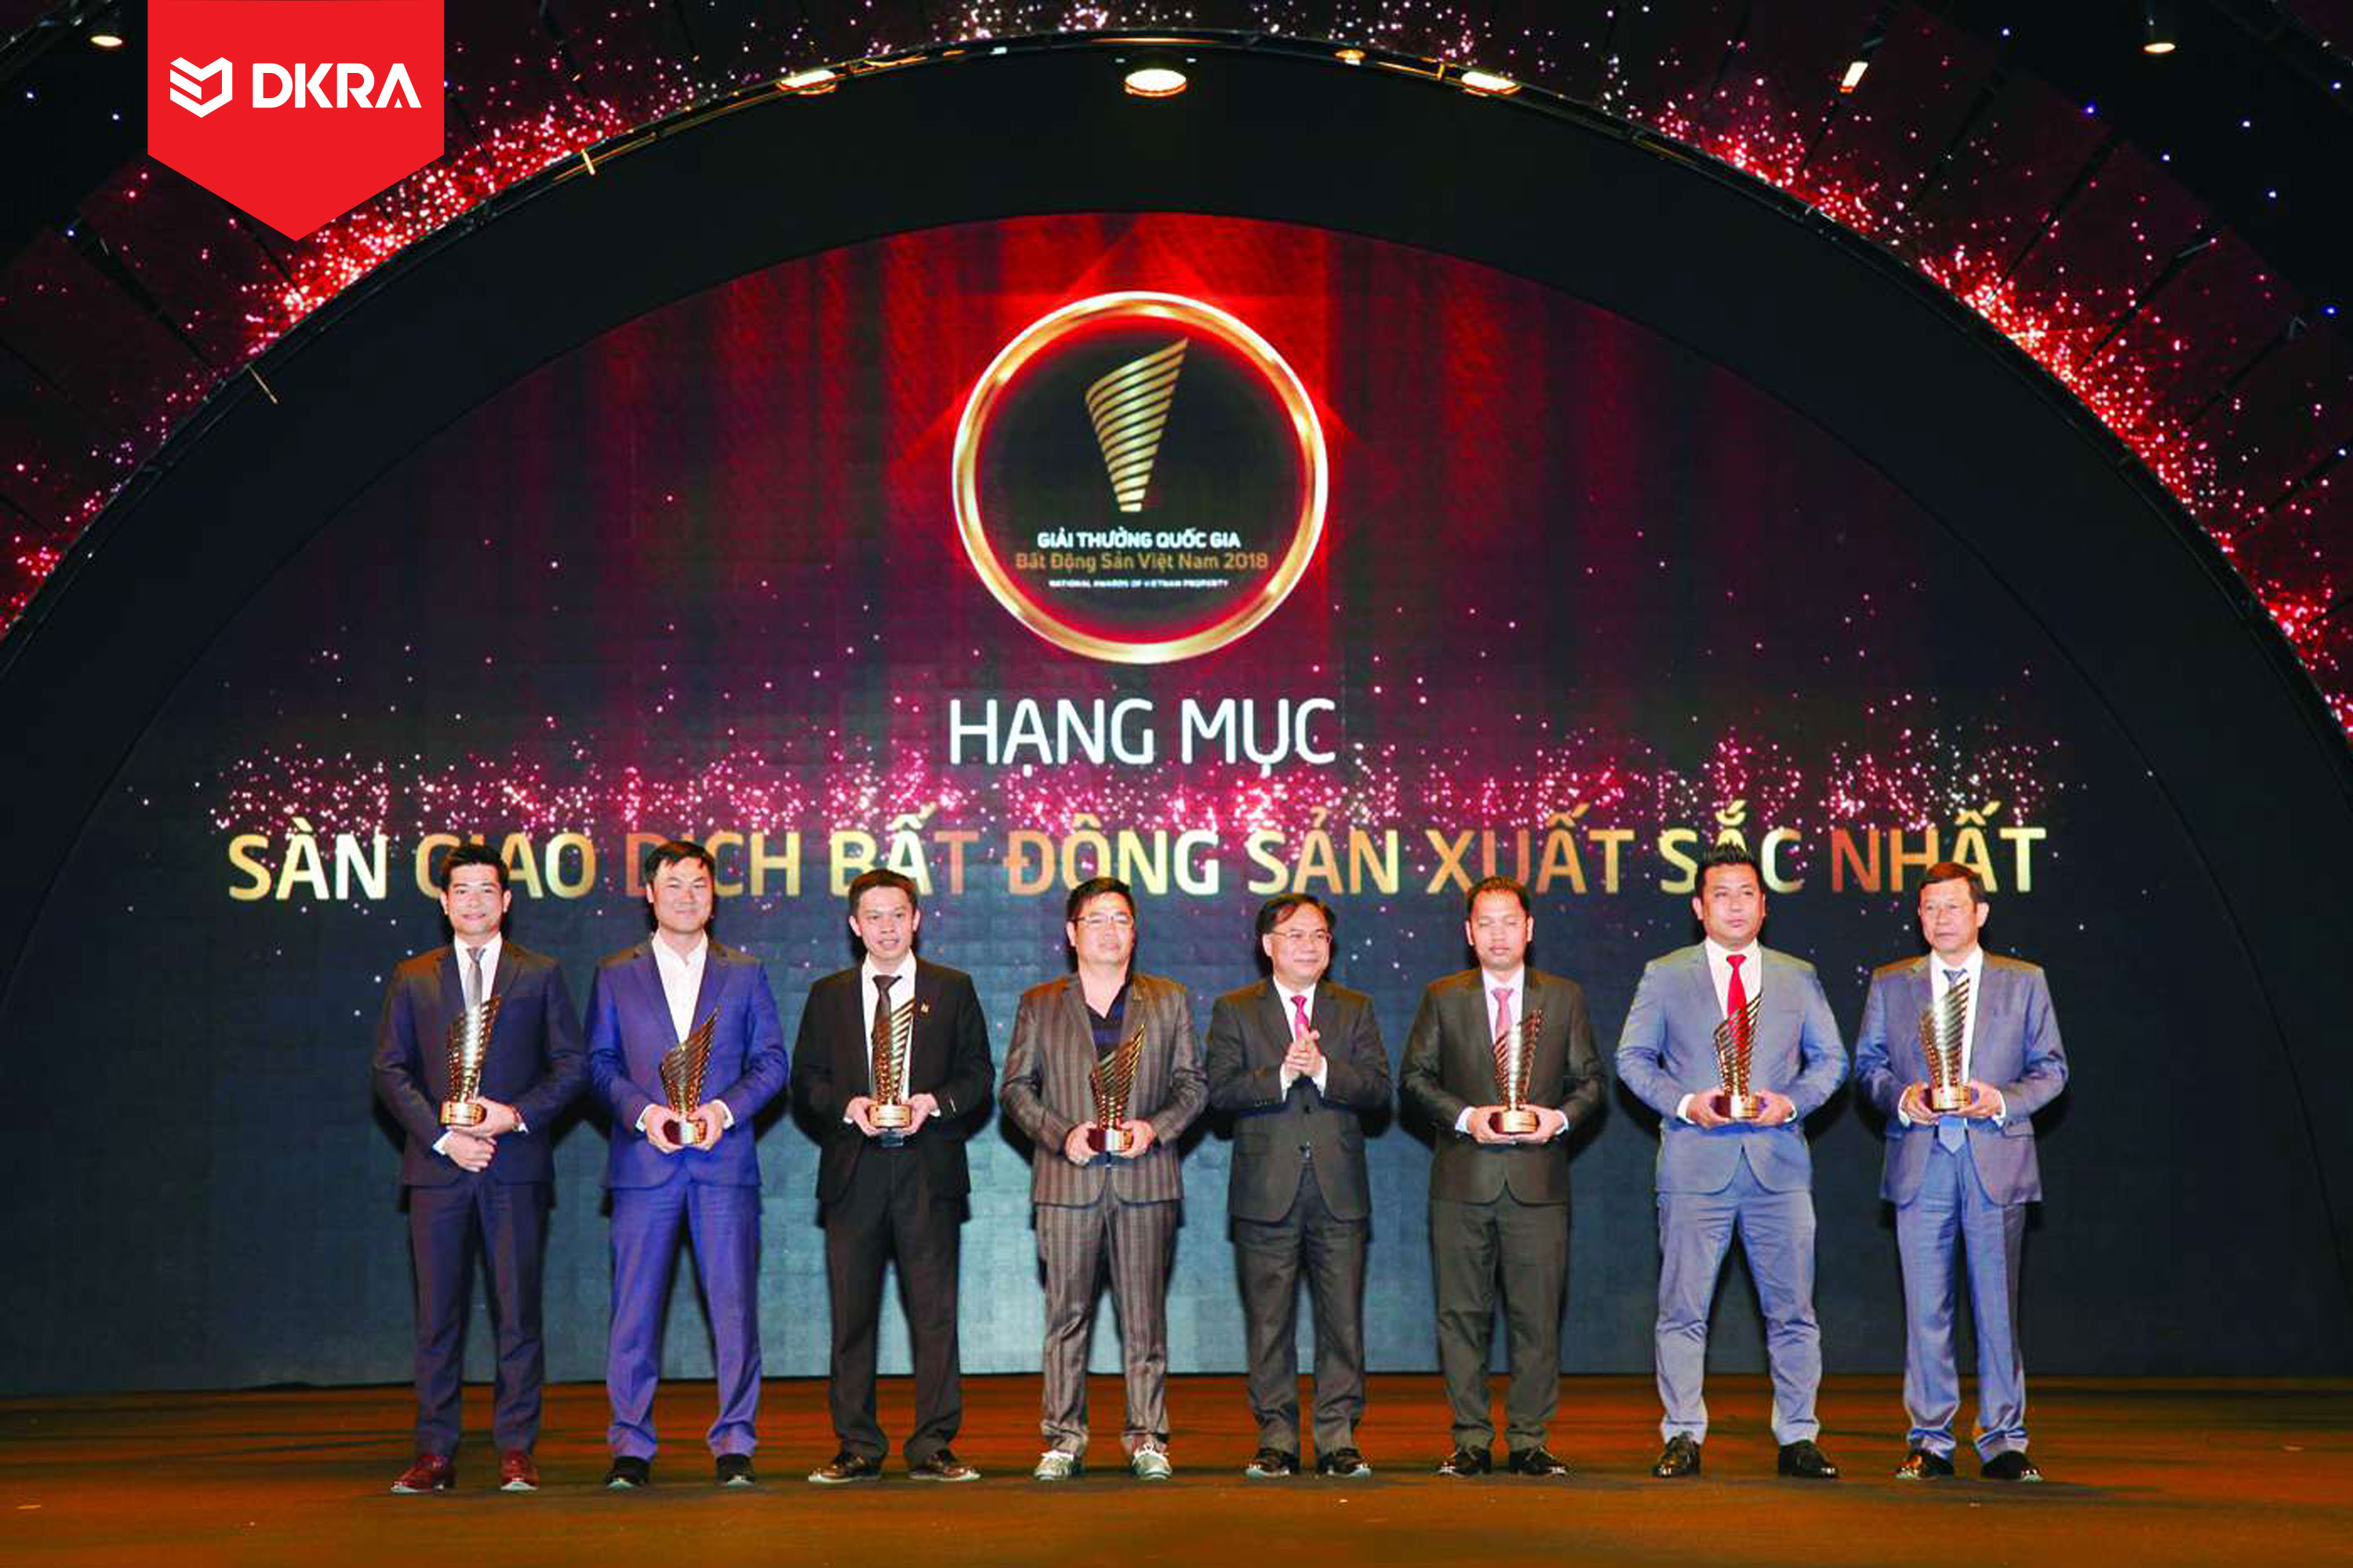 DKRA Vietnam Giải thưởng quốc gia “Sàn giao dịch xuất sắc nhất Việt” do Bộ Xây dựng và Hội Bất động sản Việt Nam (VNREA) bình chọn năm 2018